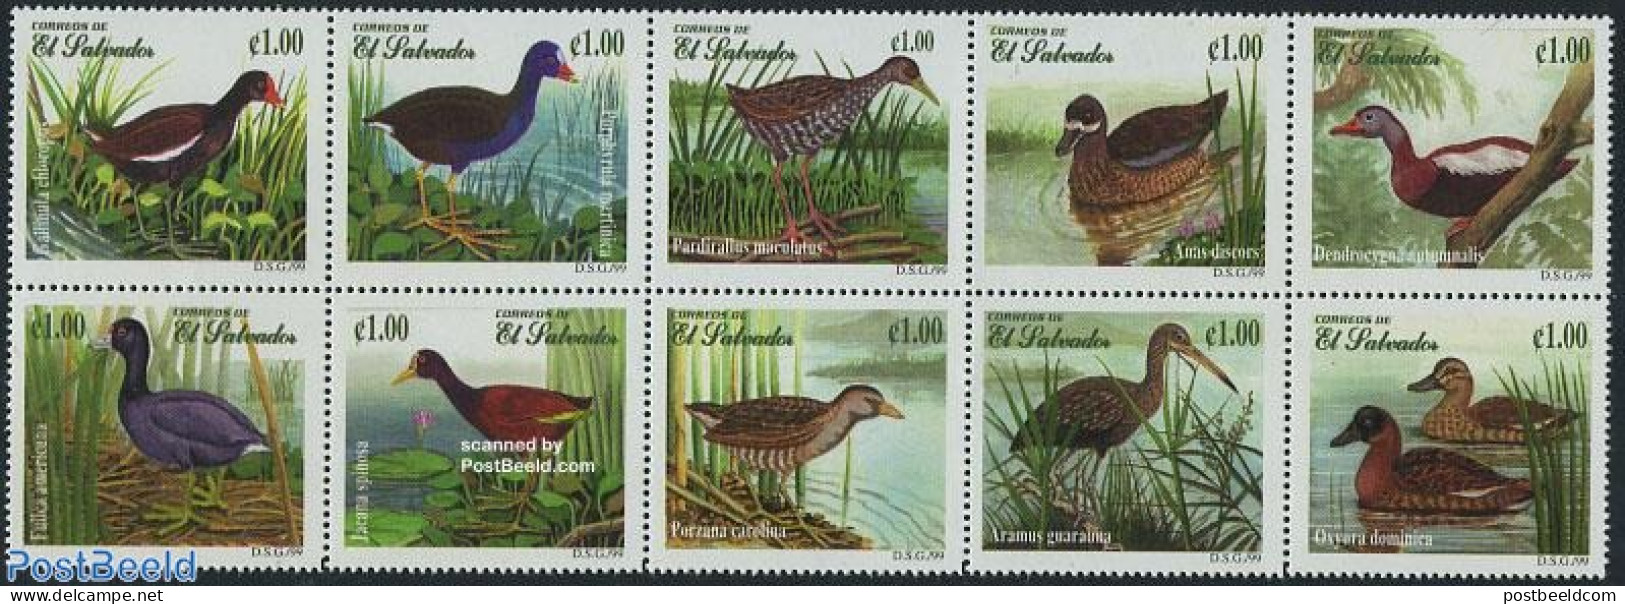 El Salvador 1999 Ducks 10v [++++], Mint NH, Nature - Birds - Ducks - Salvador